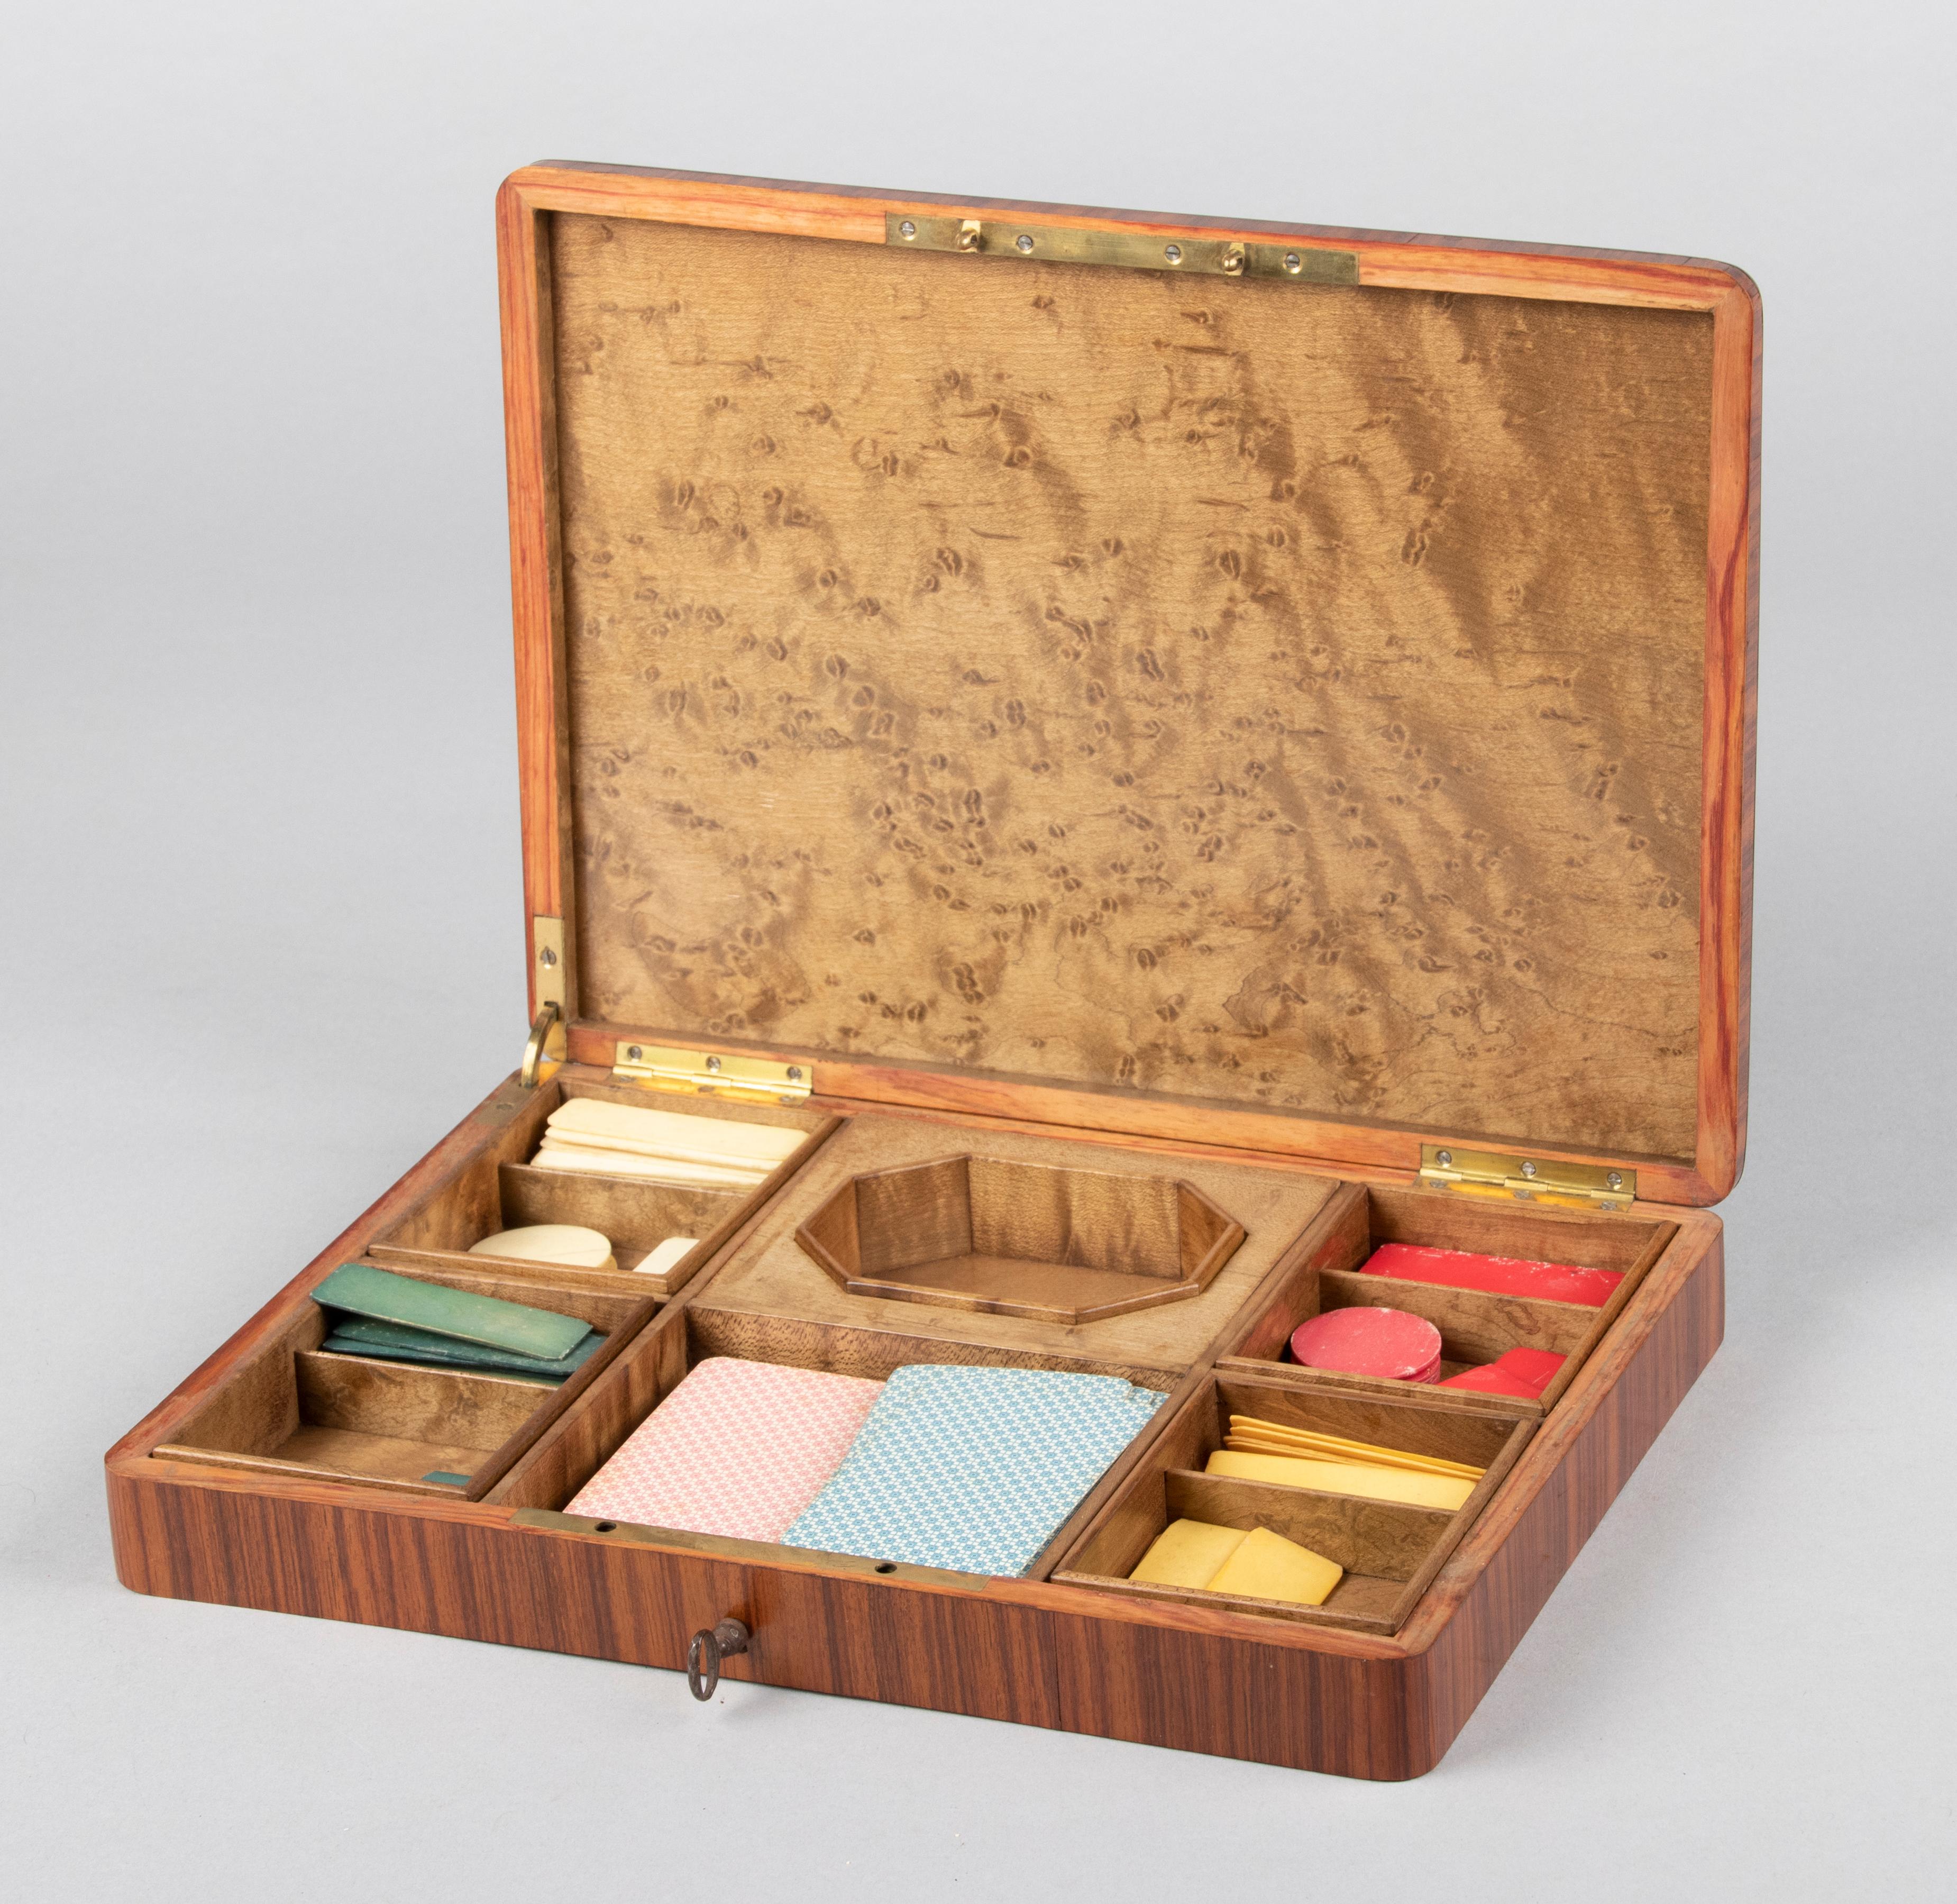 Belle boîte de jeu ancienne de la période française Napoléon III. La boîte est faite de différents types de marqueterie de bois incrustés de garnitures en laiton. Cette boîte montre la finesse du savoir-faire de l'ébéniste qui l'a fabriquée.